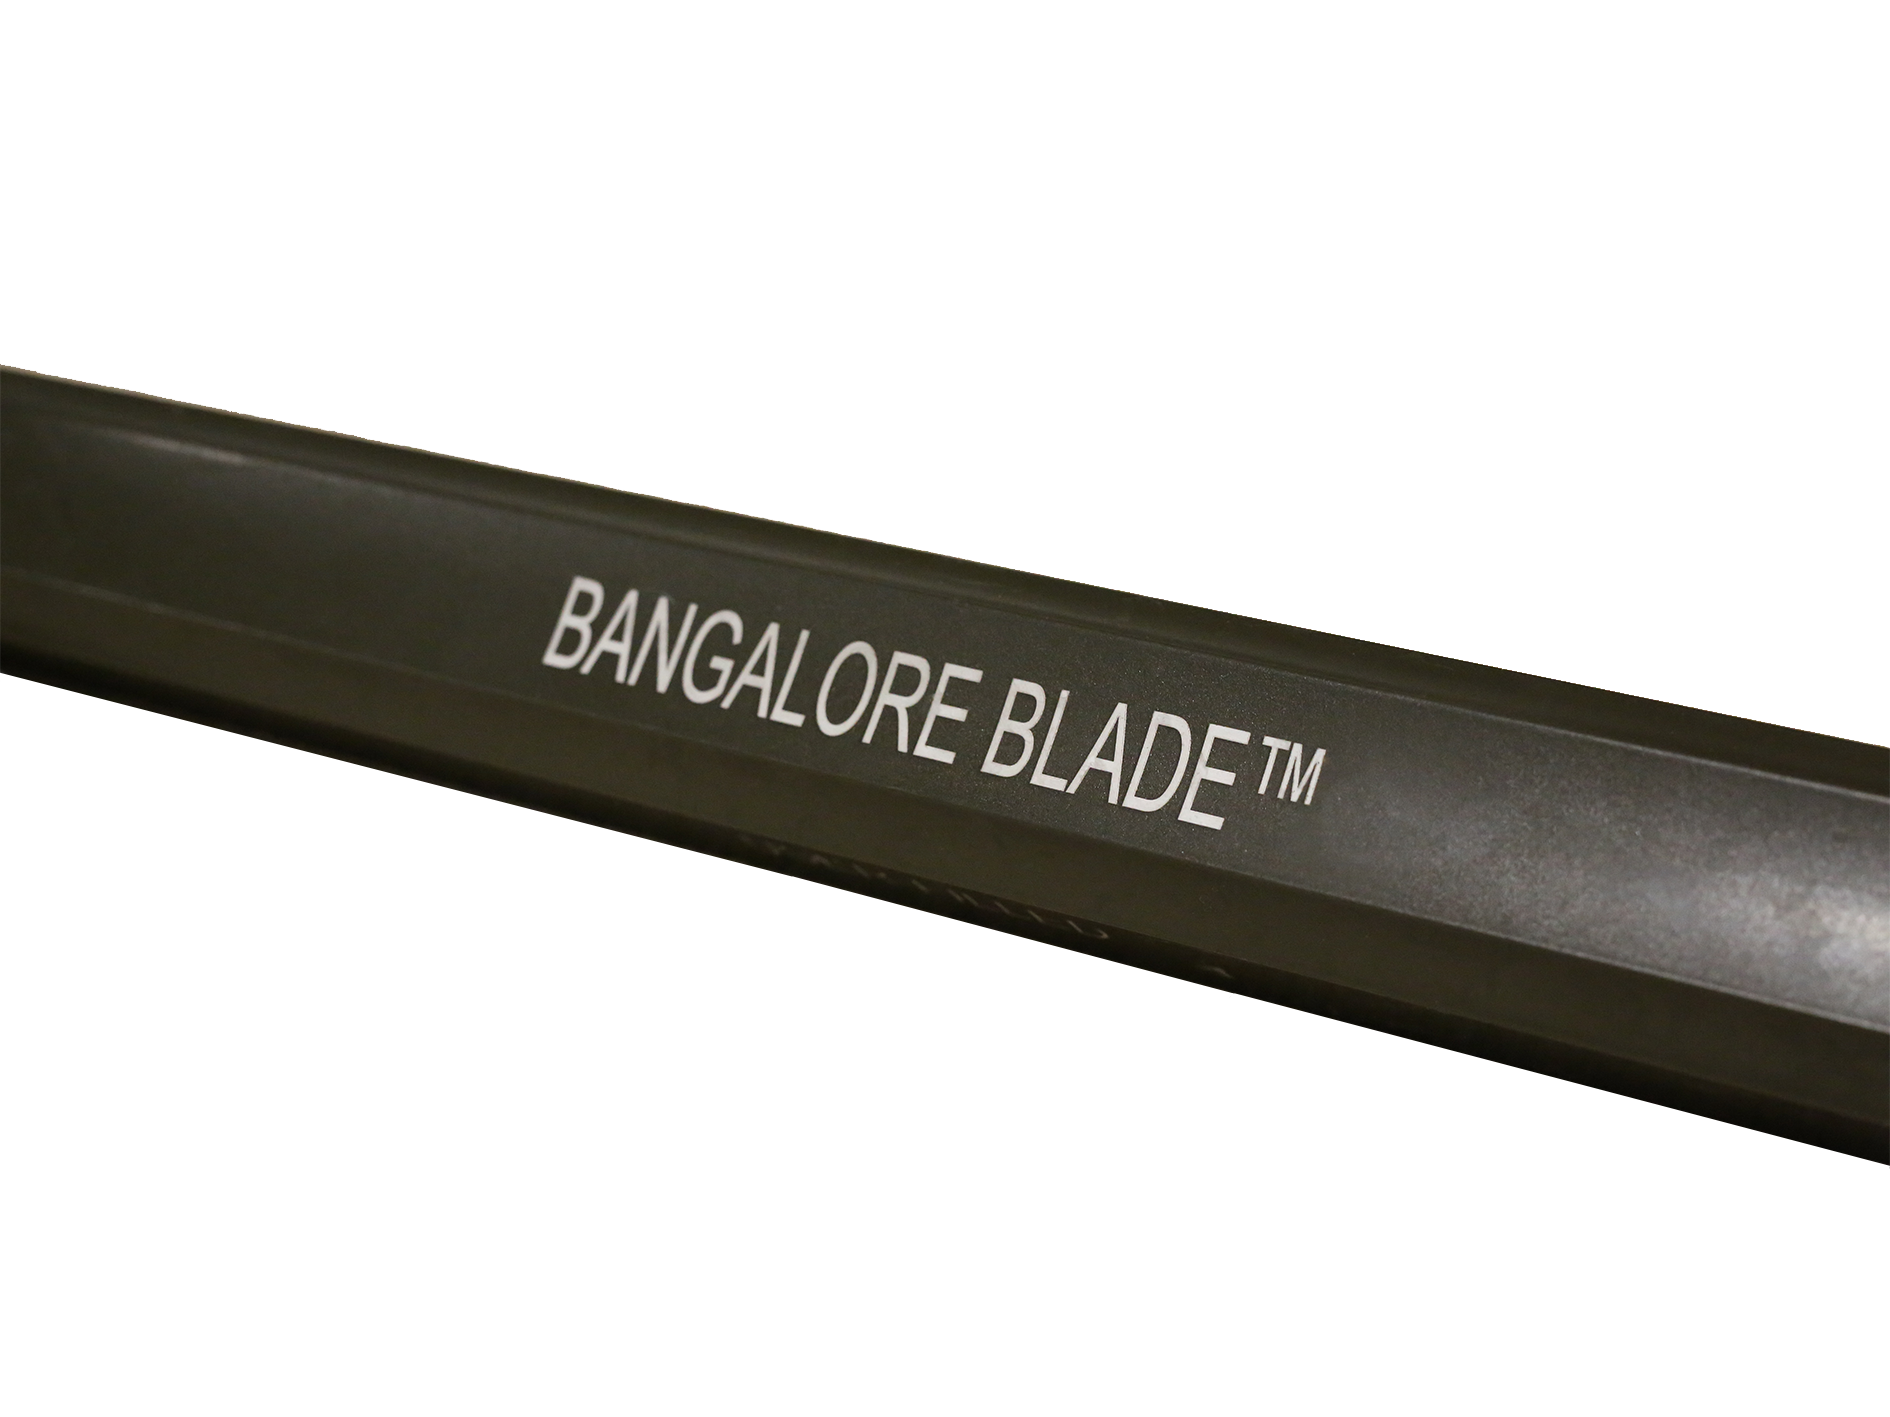 Bangalore blade 1.png